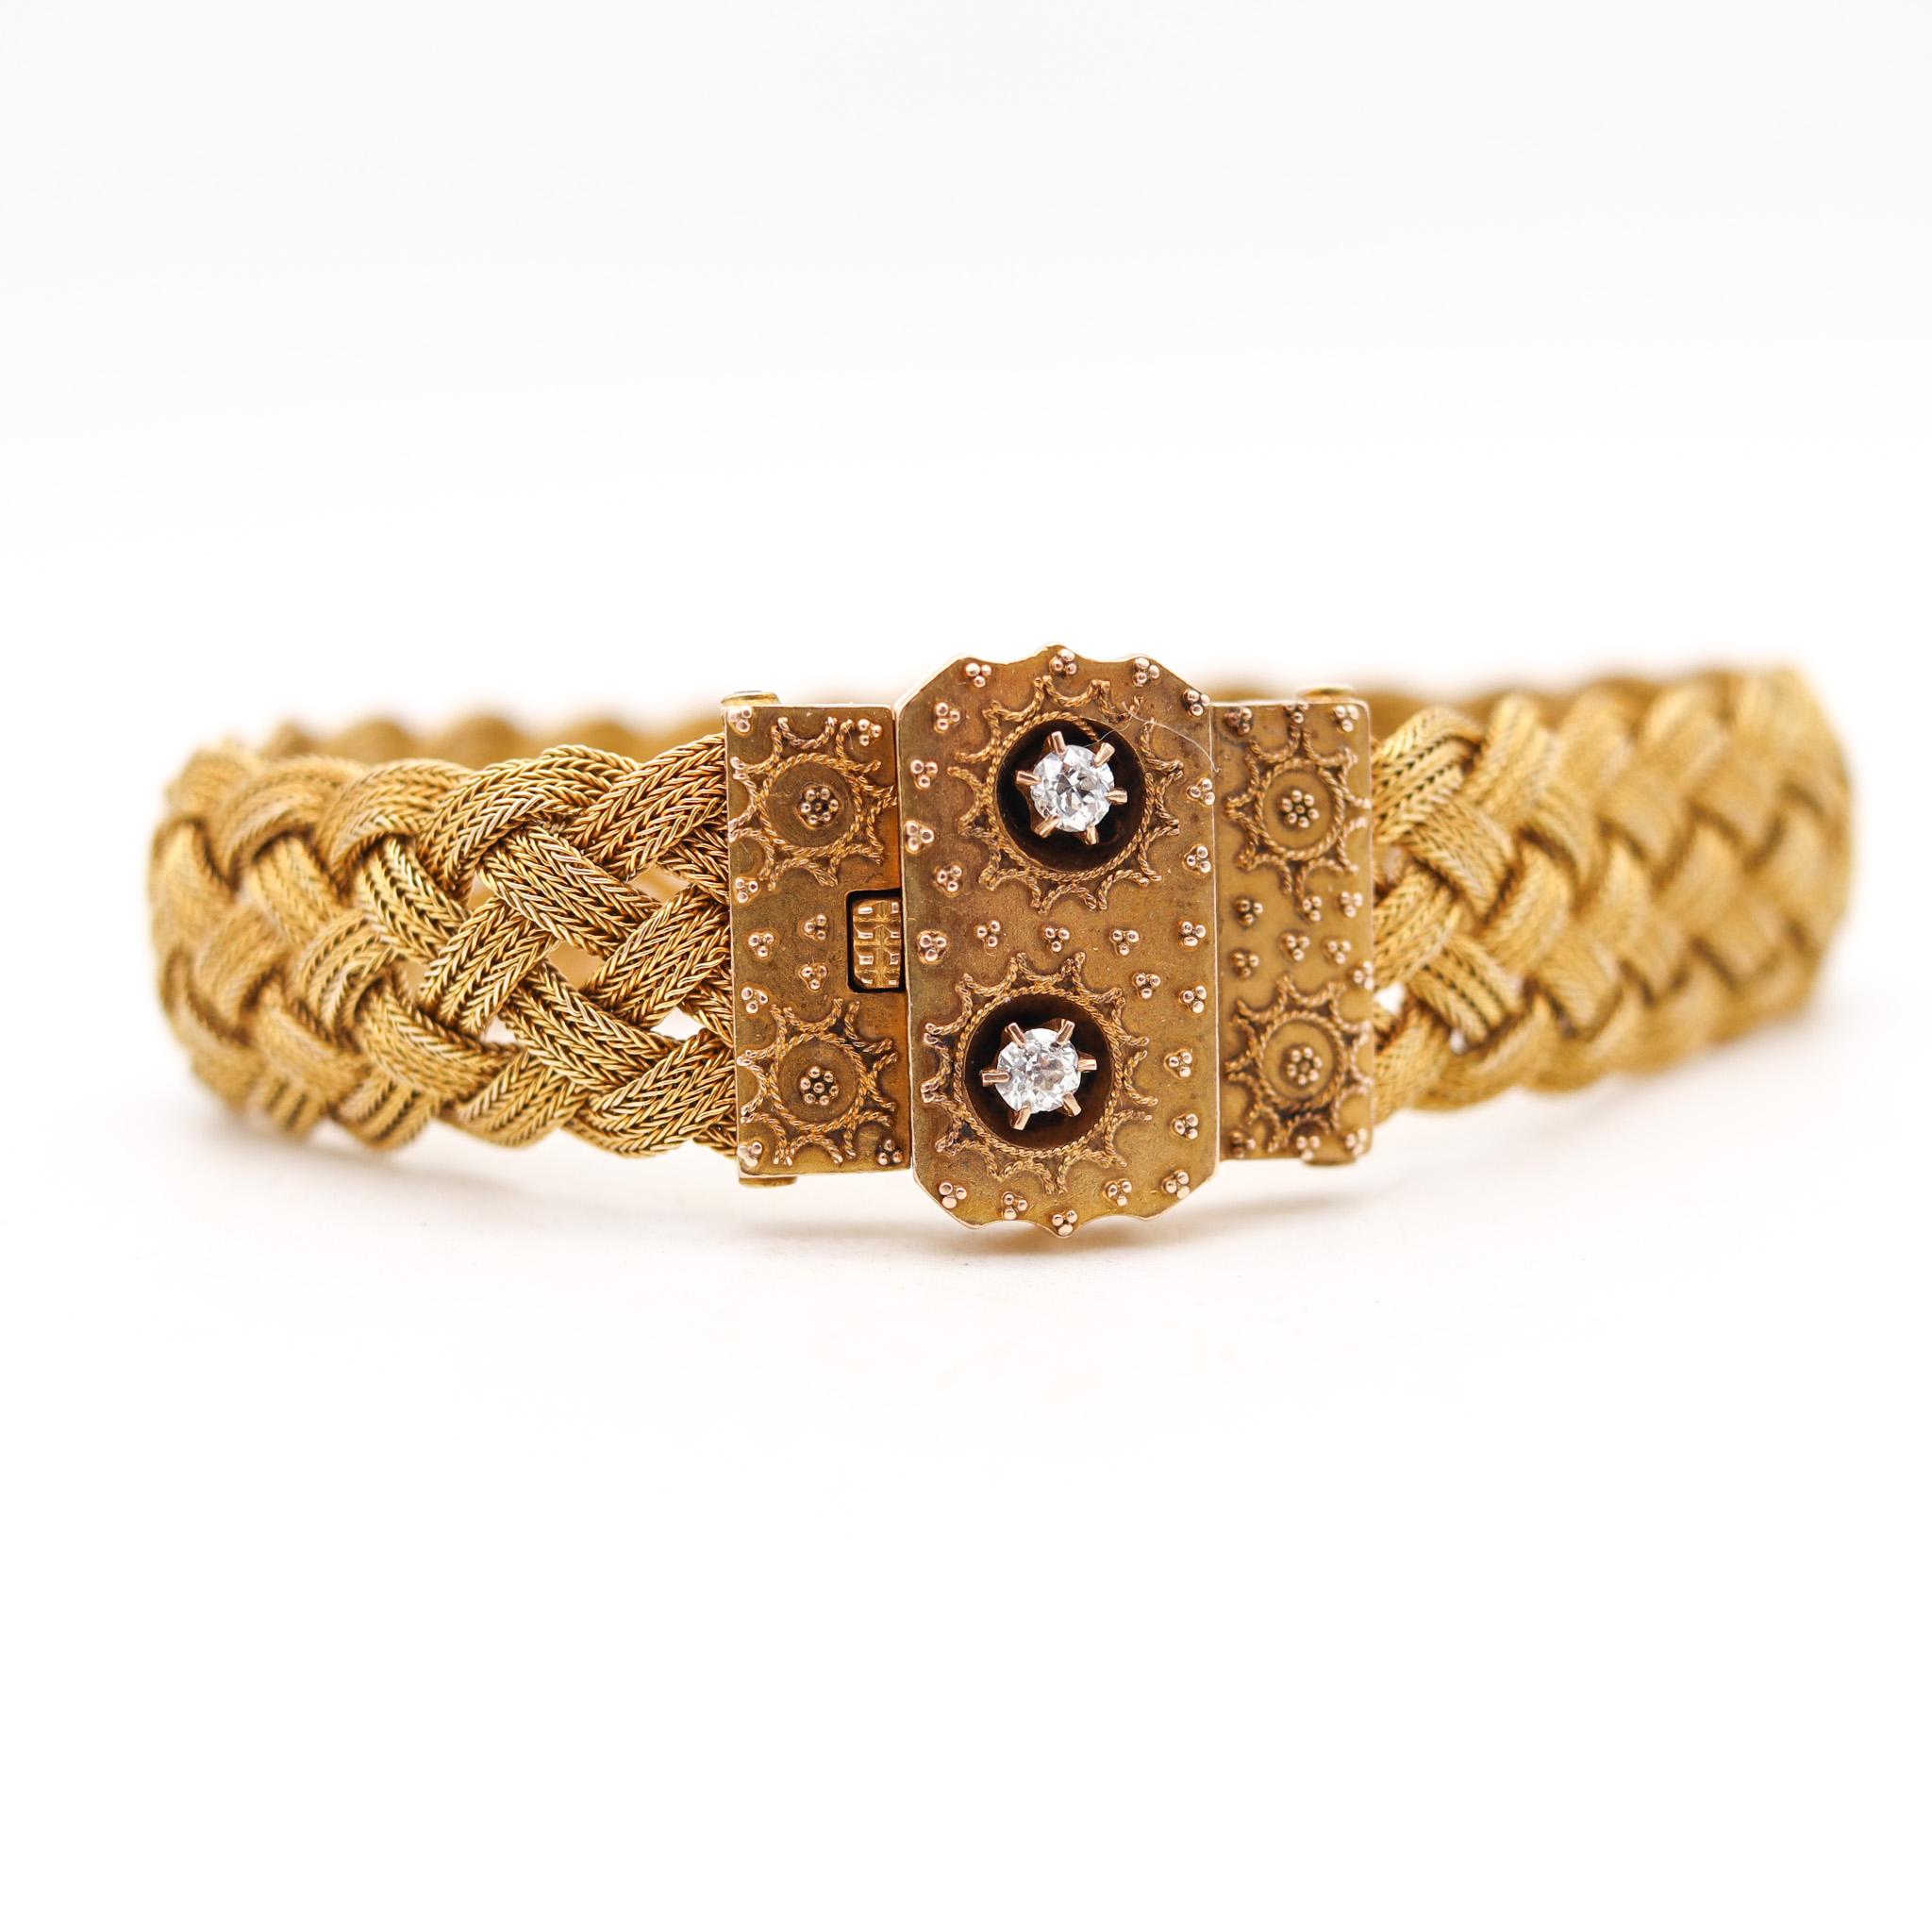 Ein etruskisches Armband aus der viktorianischen Zeit.

Schönes, gewebtes, flexibles Armband, das in England während der viktorianischen Periode (1837-1901), um 1860, hergestellt wurde. Das wunderschöne Design besteht aus einem komplizierten und